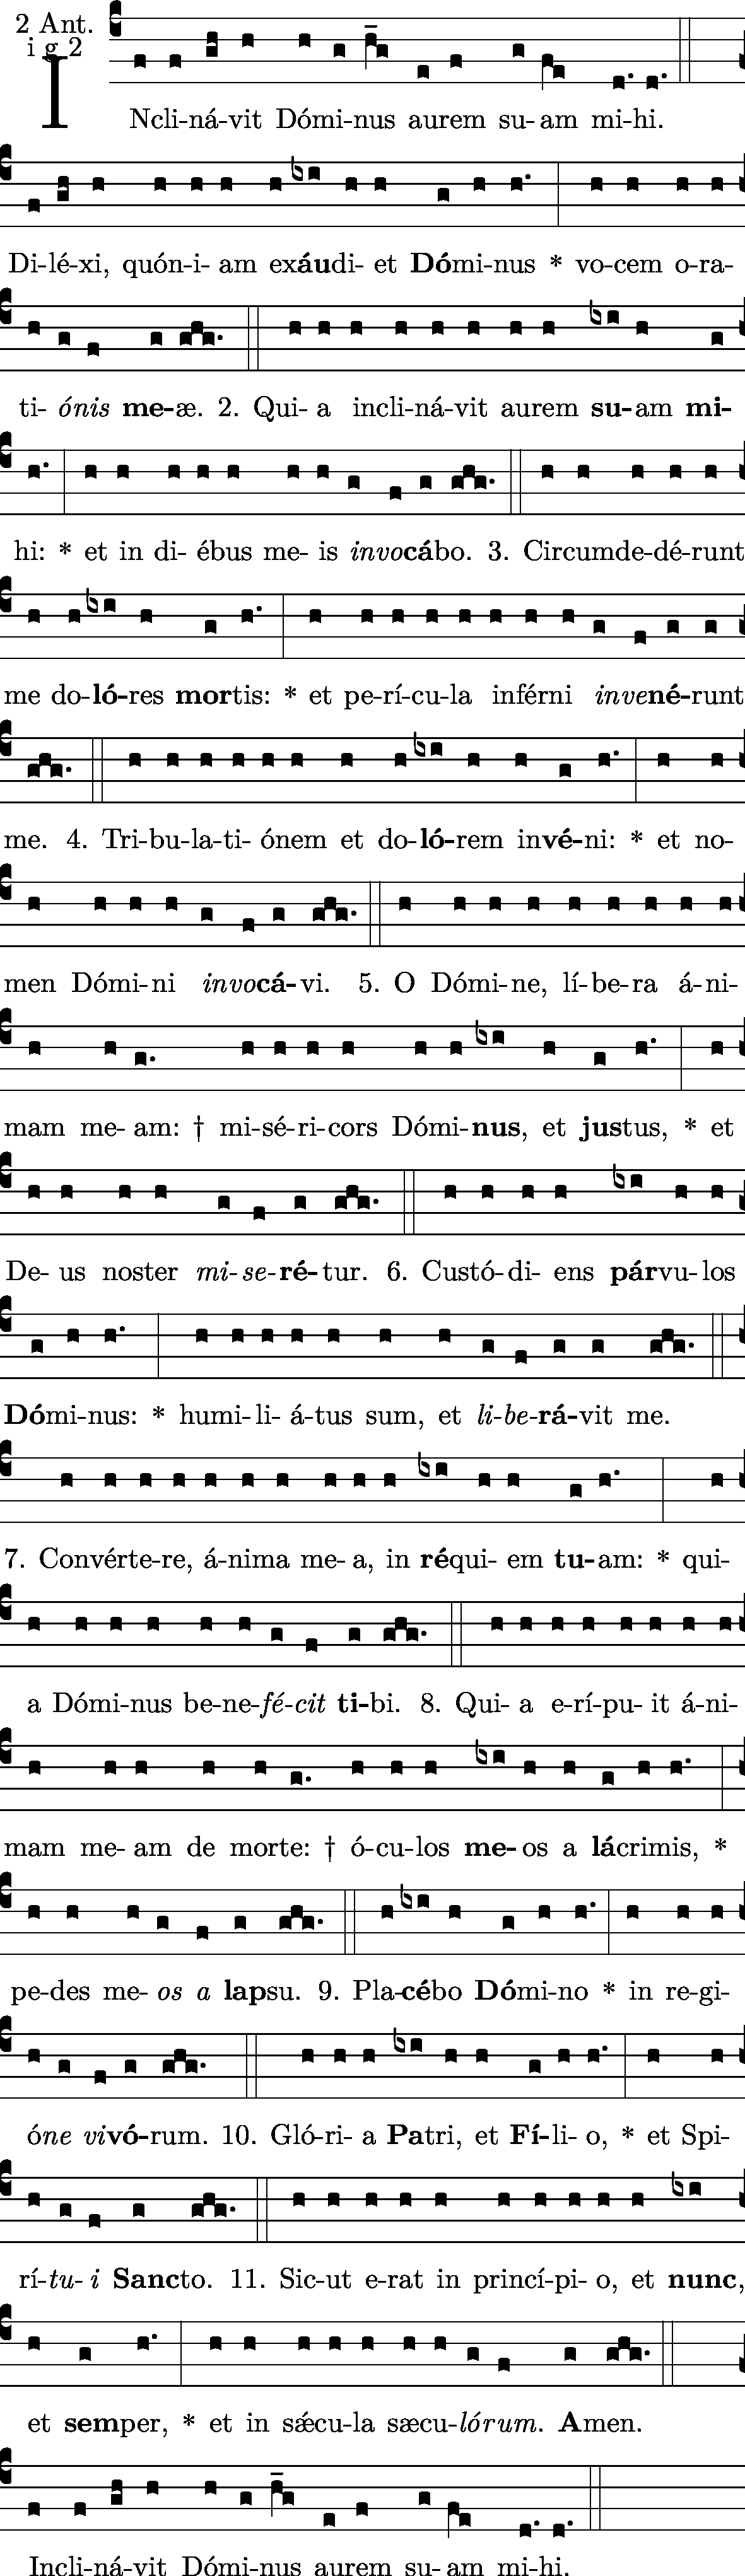 (a capella) Inclinavit 1g2 Antiphona: Dominus Neumz: - Fer Vesperas - 2 Vesp